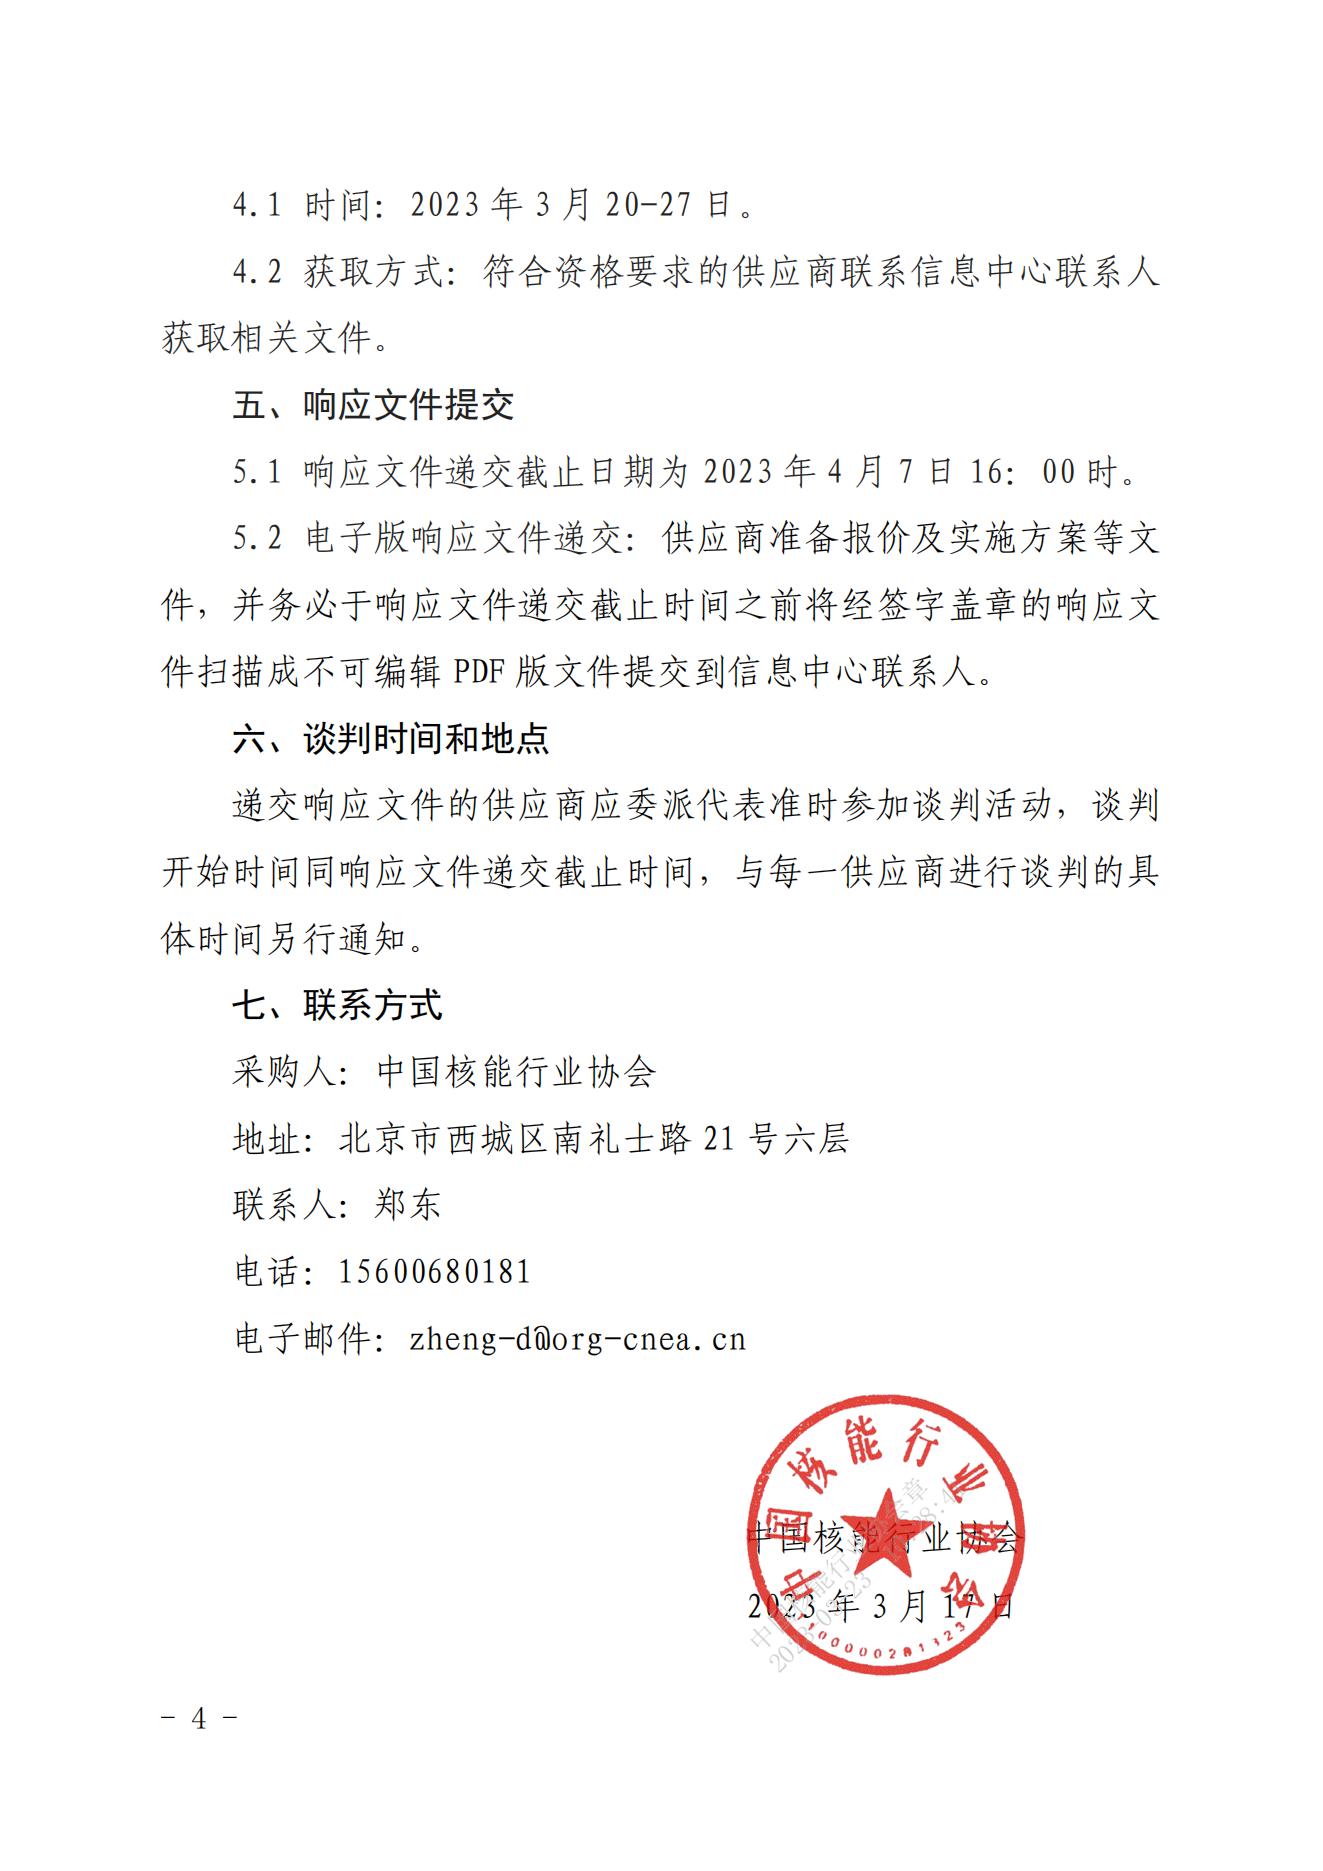 中国核能行业协会移动办公平台系统开发项目竞争性谈判公告 (2)_03.jpg